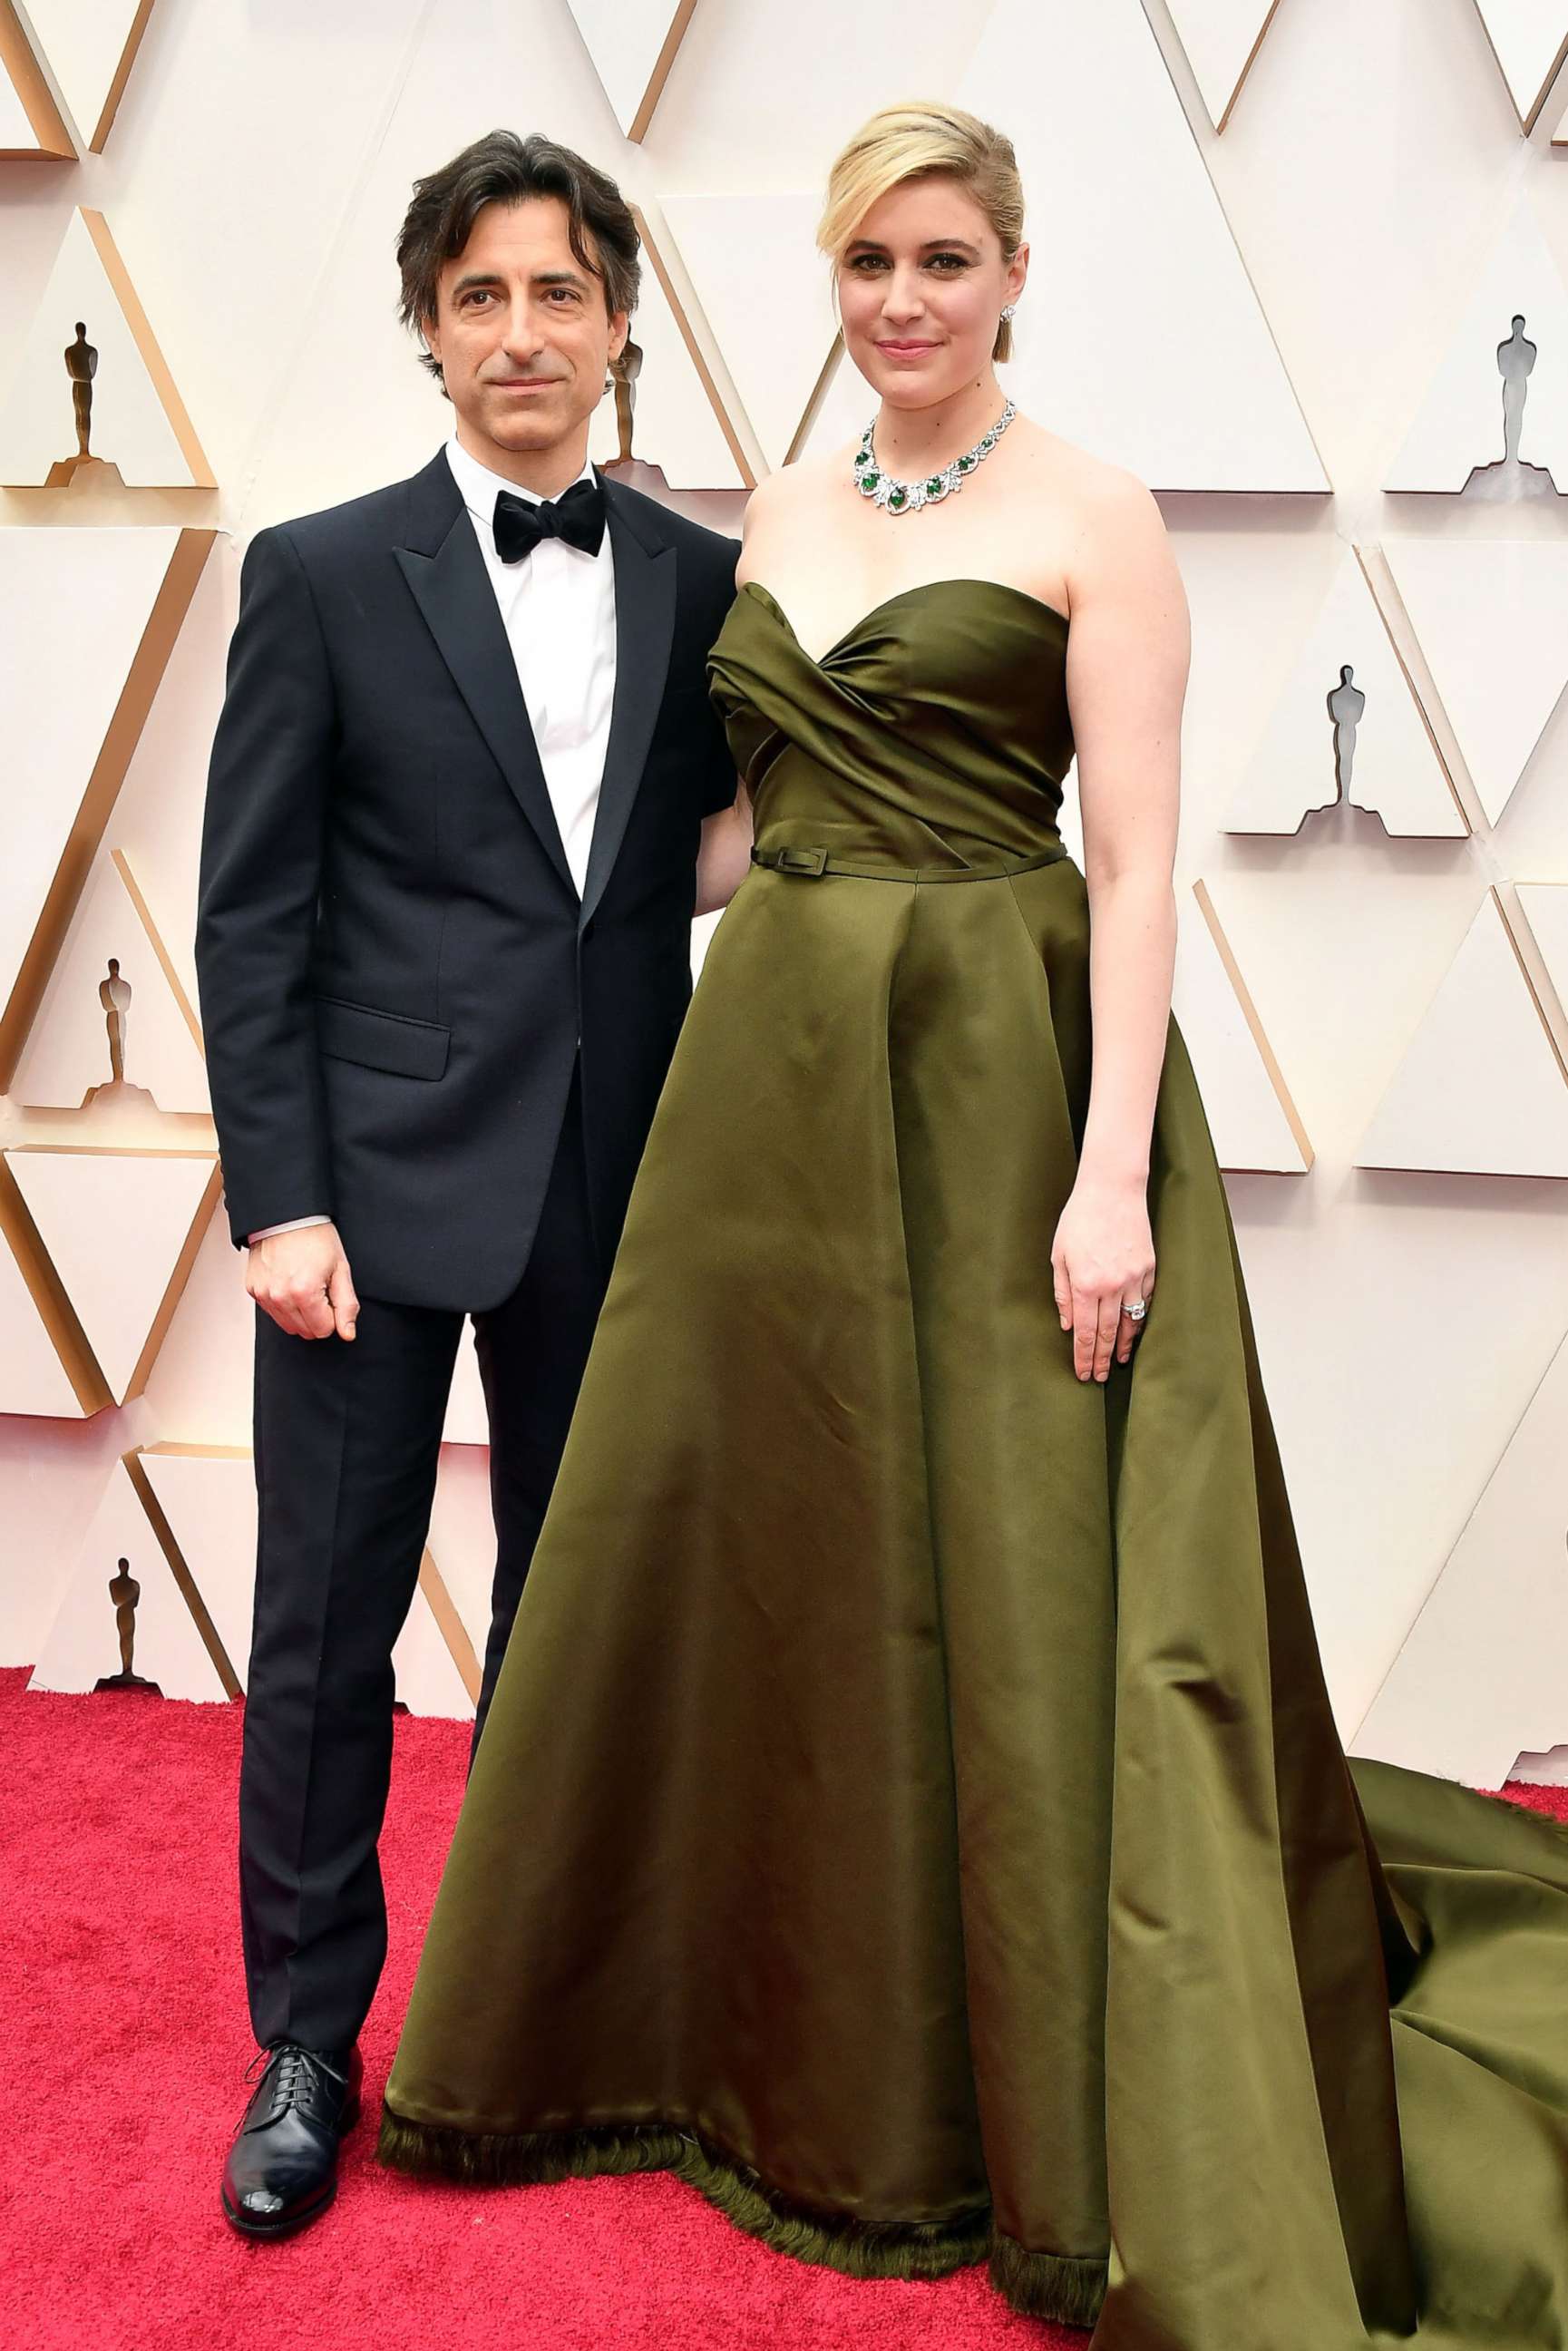 Scarlett Johansson among the bombshells on Oscars red carpet – KGET 17